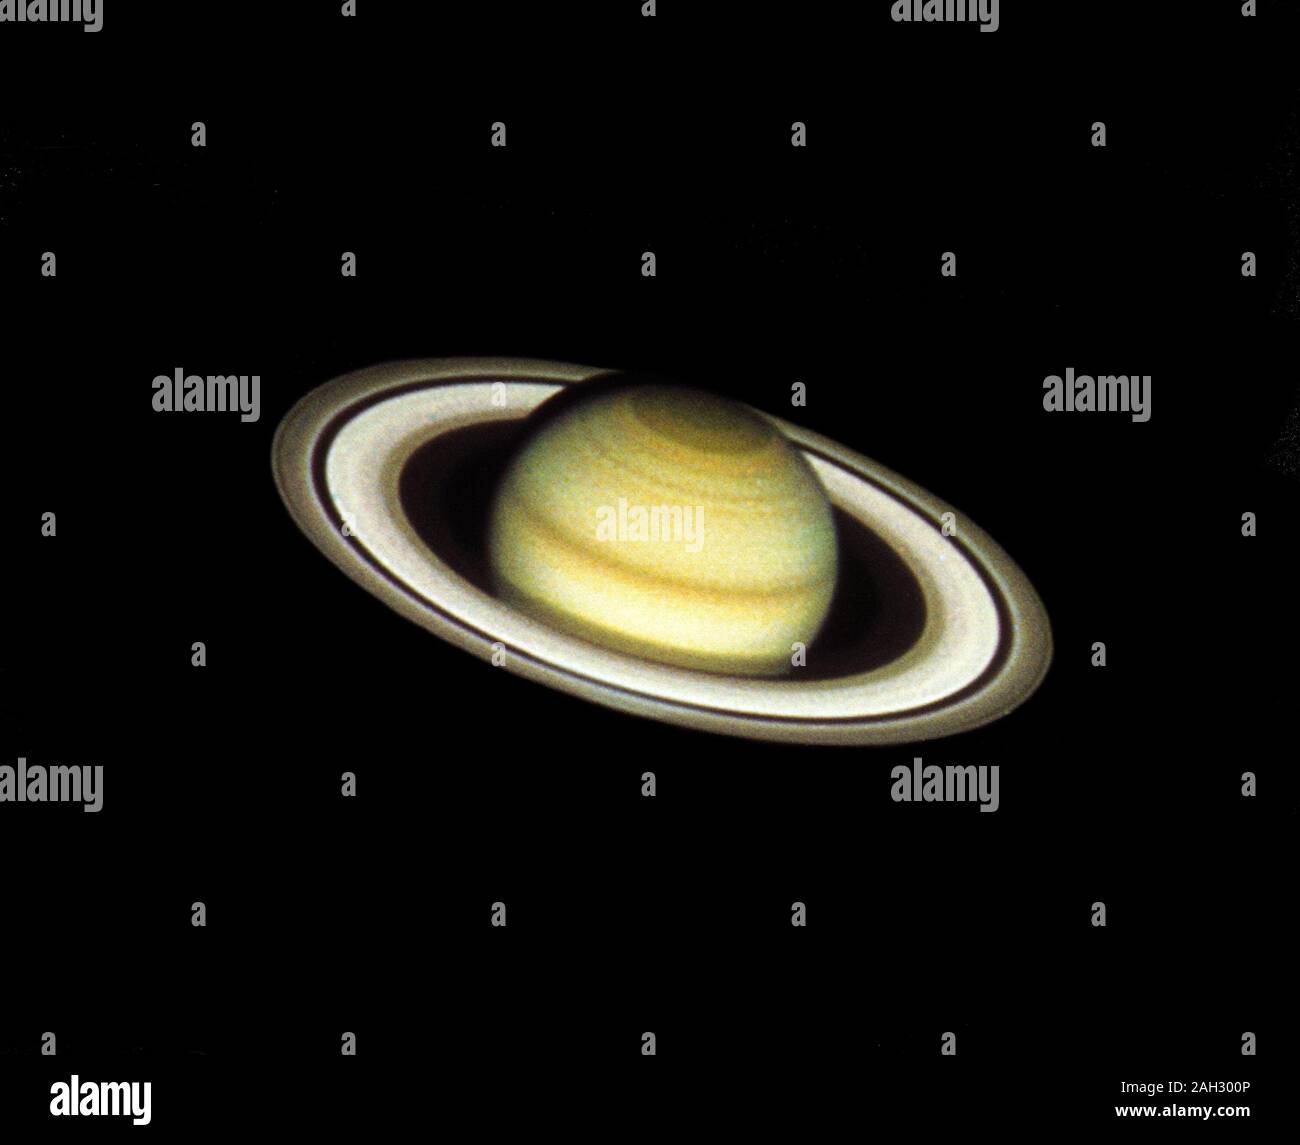 Die Farbe in das Bild wird durch die Kombination von drei verschiedenen Bilder, in blauen, grünen und roten Licht genommen (4390, 5470 und 7180 Angström). Da north pole des Saturn ist derzeit geneigt in Richtung Erde (24 Grad), die HST-Bild zeigt ausführlich beispielloses in der atmosphärischen Eigenschaften am nördlichen polar Haube, einer Region, die nicht durch die Voyager Raumsonden abgebildet. Die klassischen Merkmale von riesigen Saturns Ringsystem sind auch eindeutig von außen gesehen Kante zu irner; die hellen Ringe A und B, die von der Cassini Teilung geteilt und die sehr schwache Innere C Ring. Die Enche Division, einem dunklen Spalt n Stockfoto